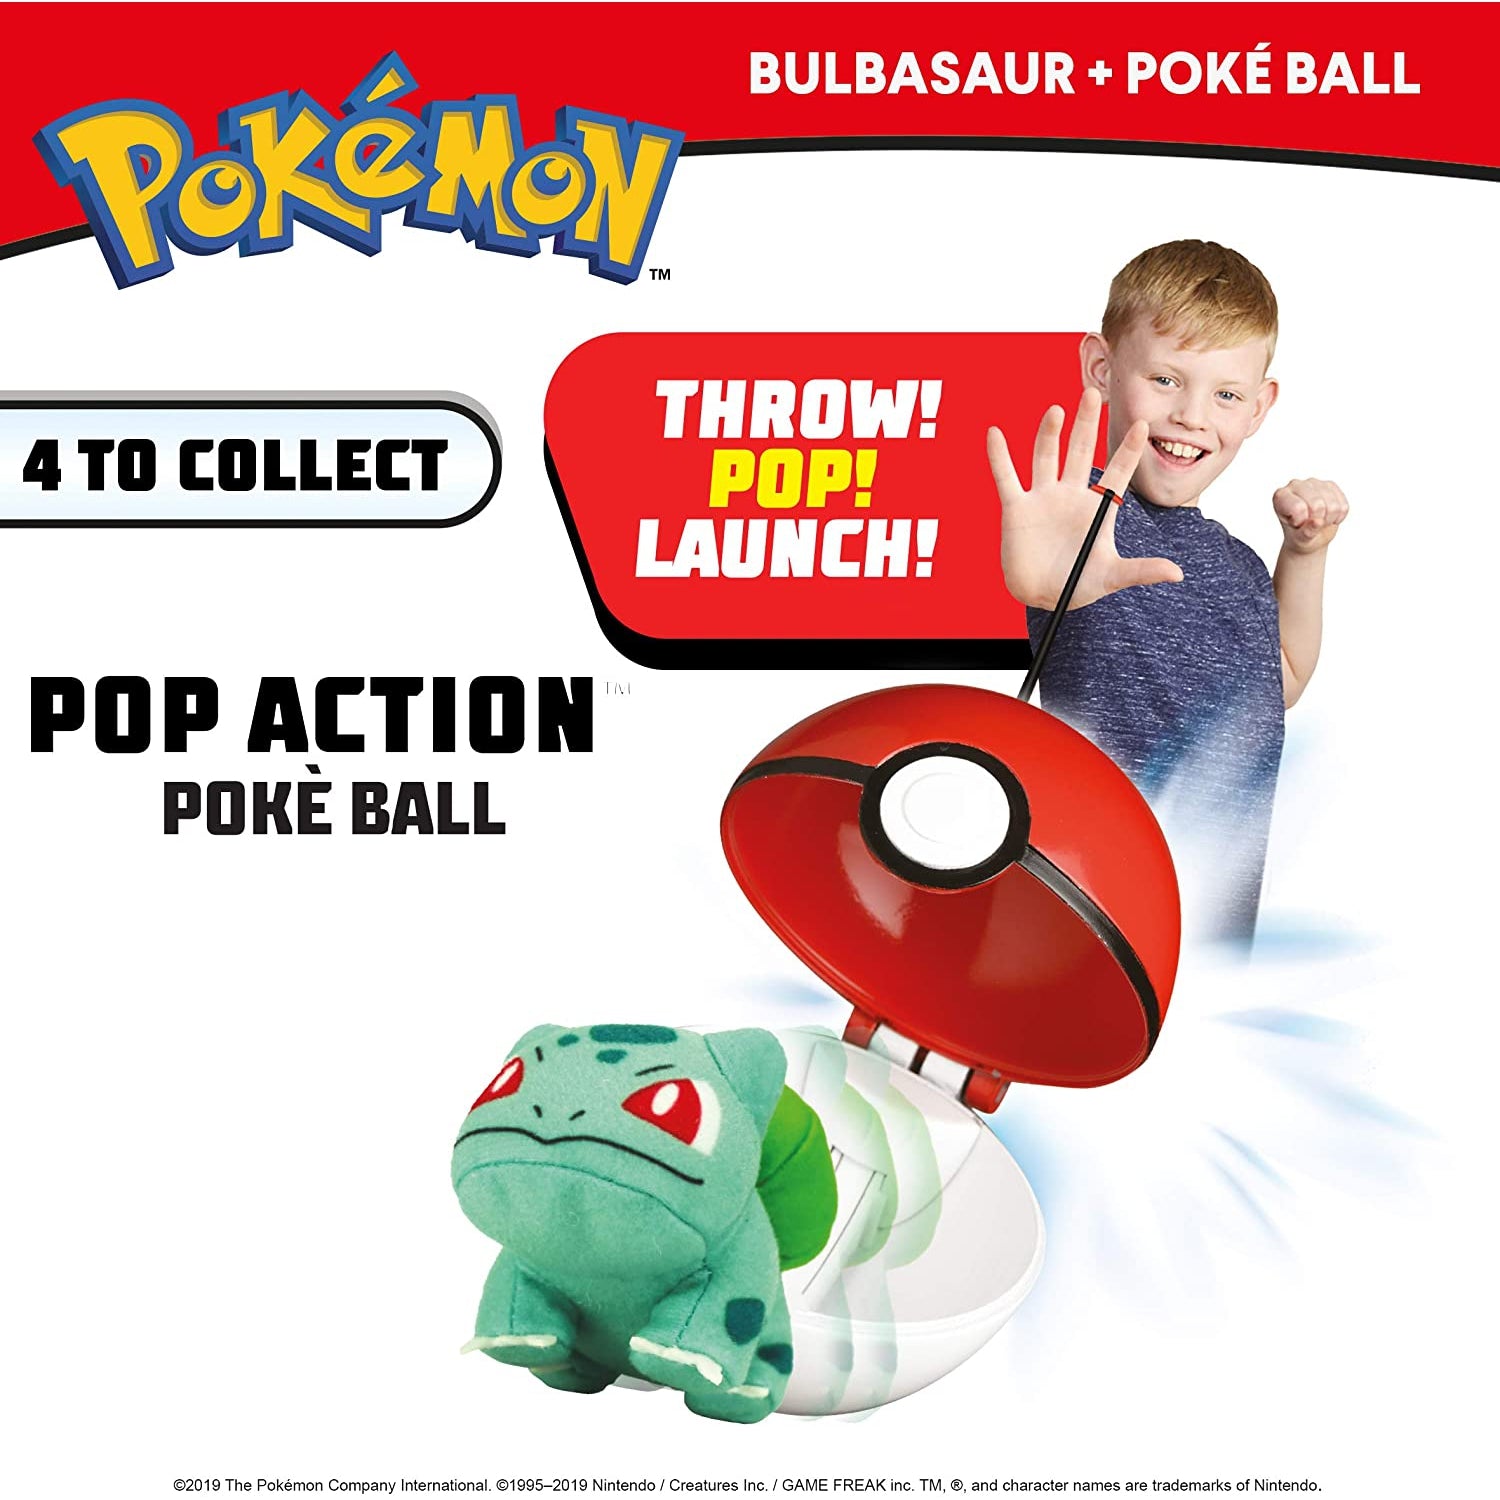 Pokemon 674 95104 Pop Action Poke Ball-Bulbasaur, Multicolor